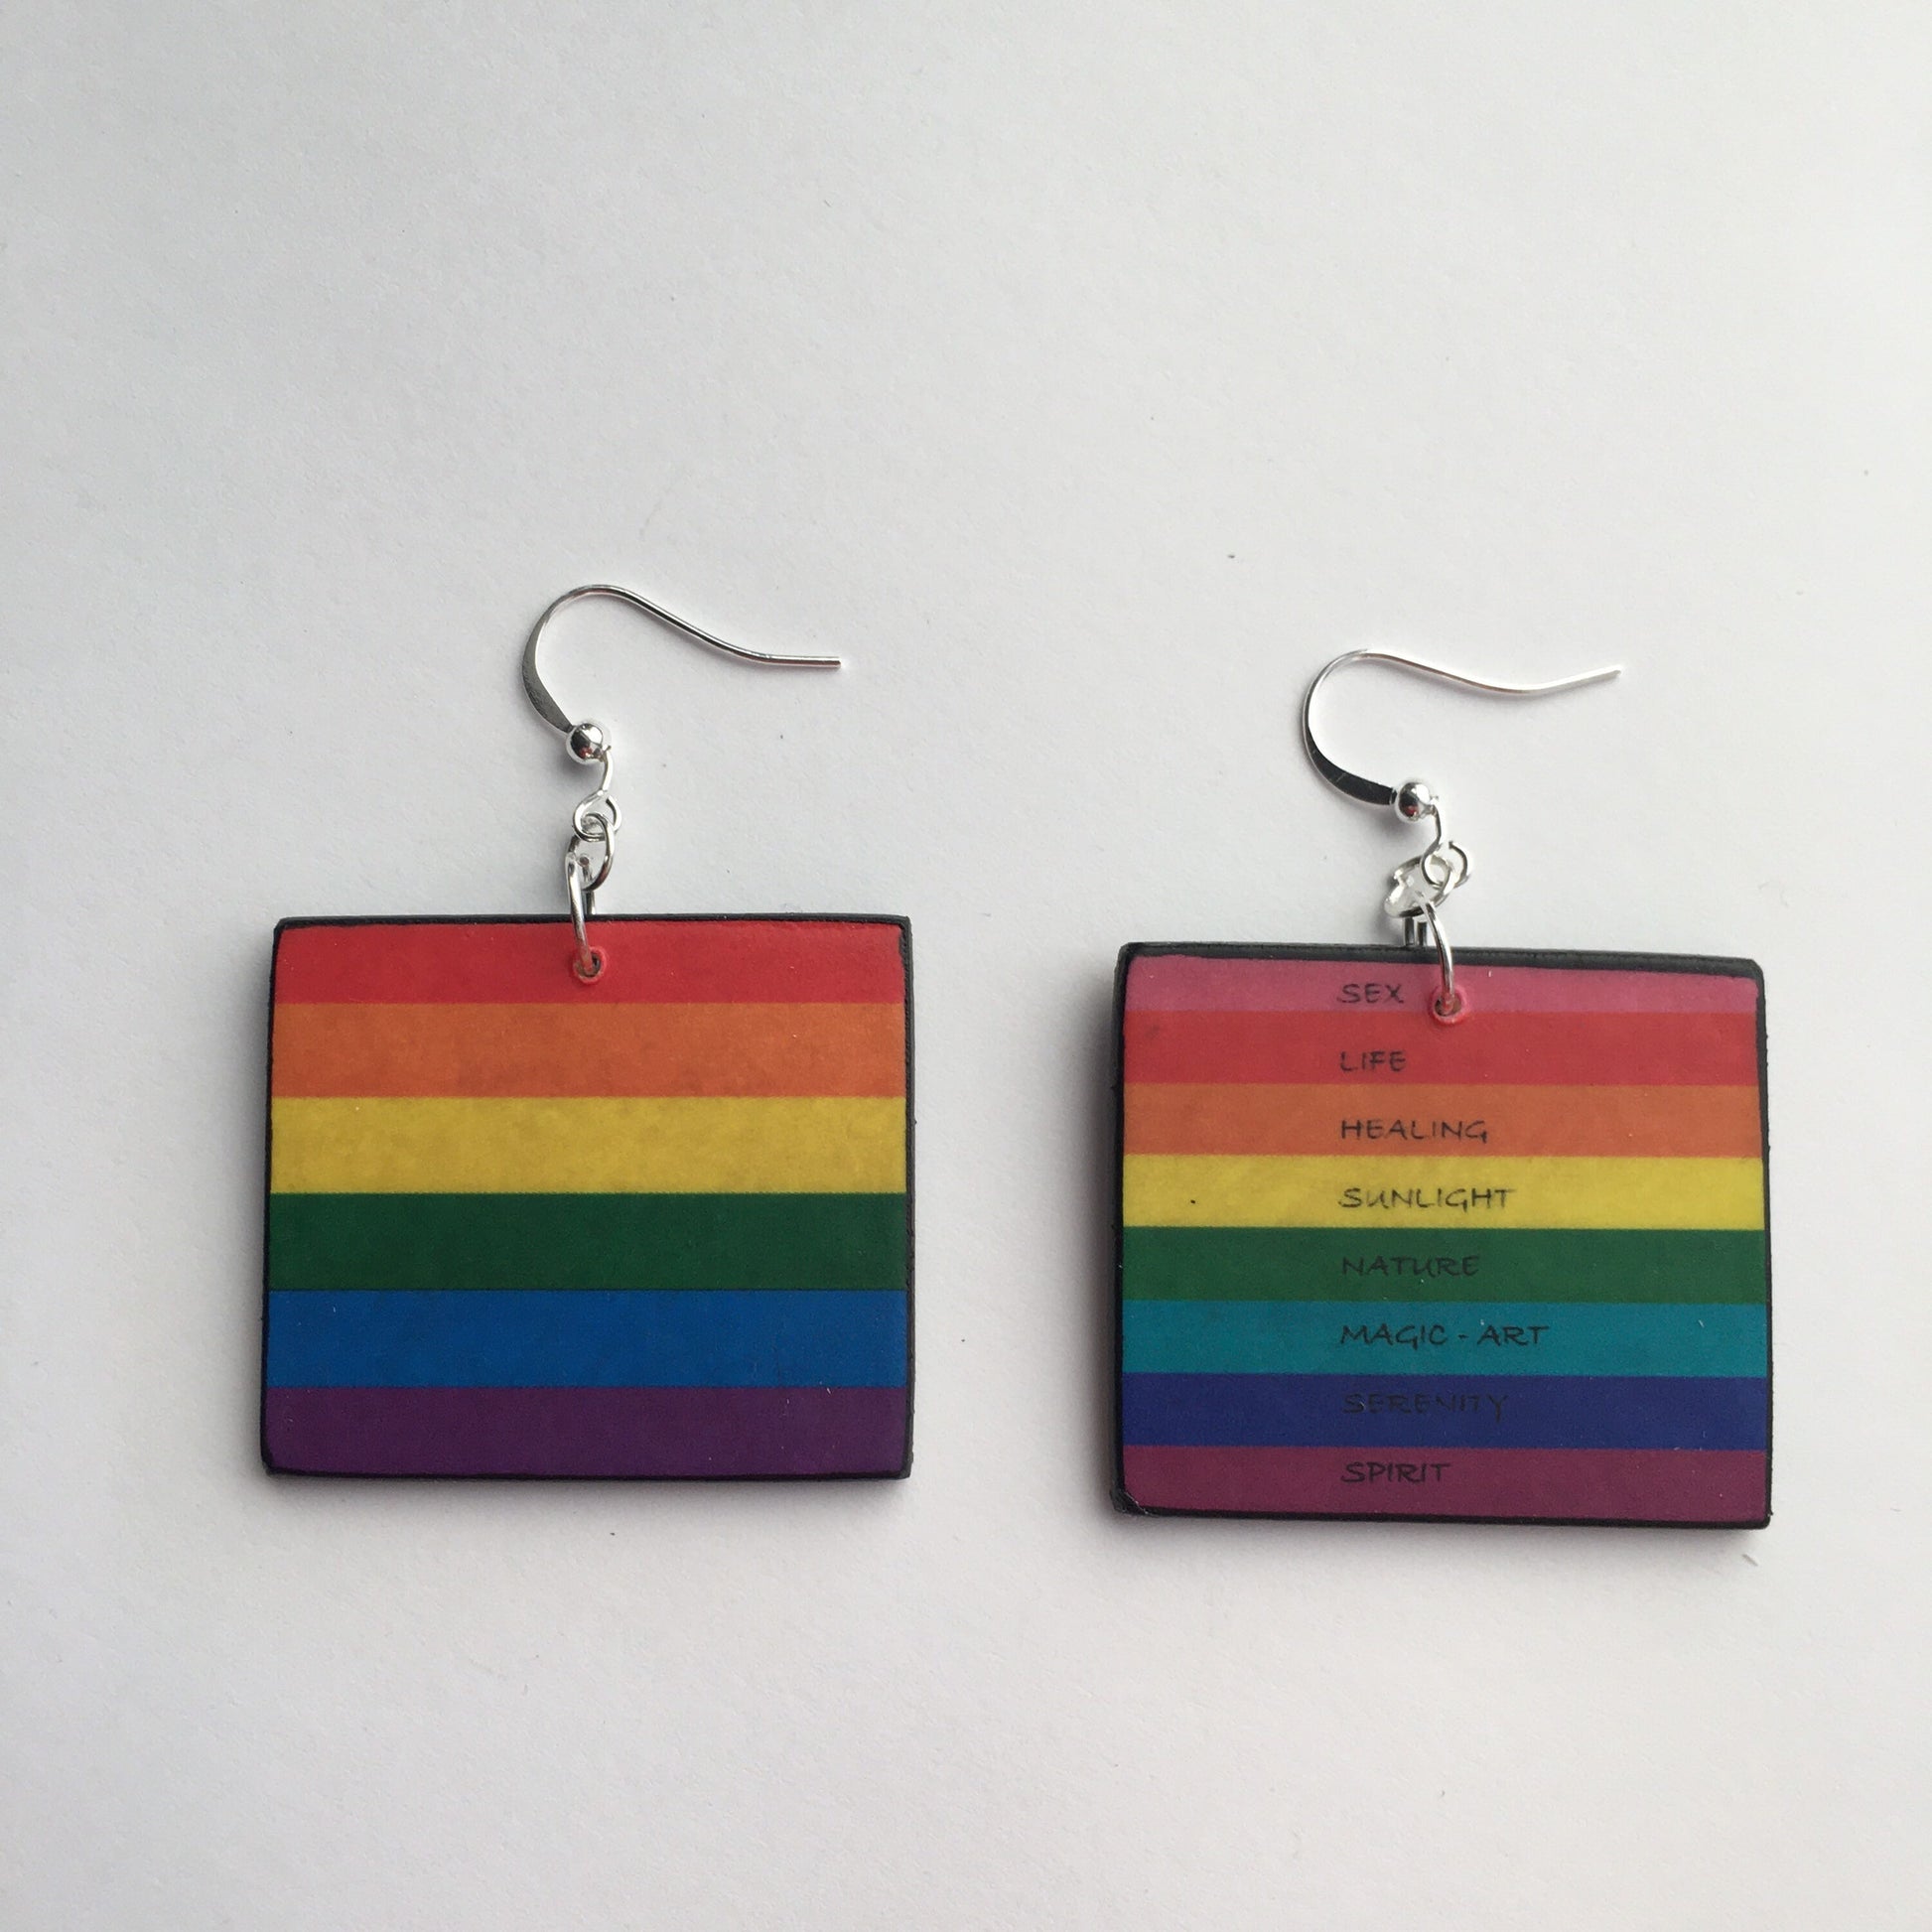 Lesbian art earrings gift with the LGBT rainbow flag art earrings by Obljewellery